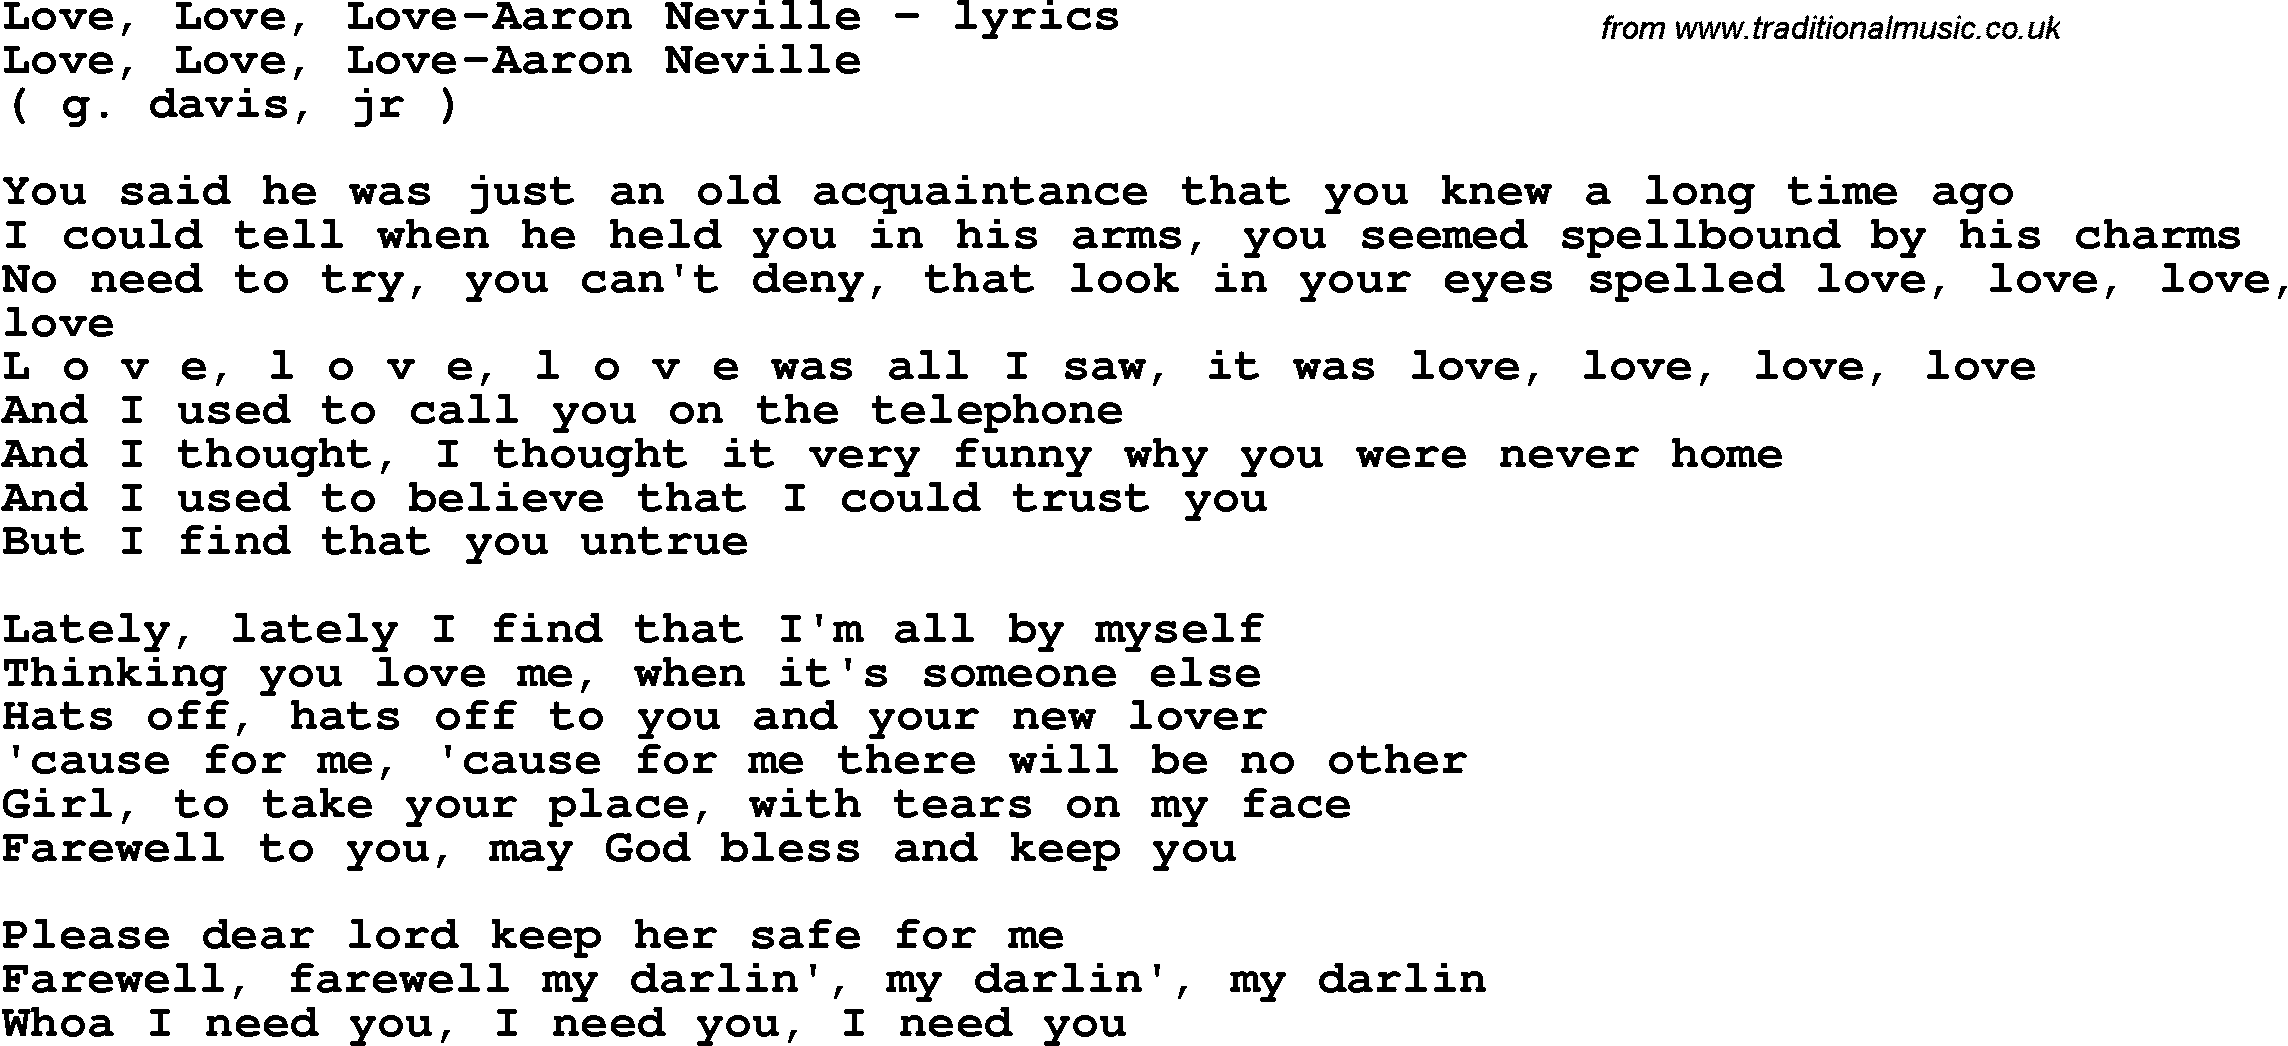 Love Song Lyrics for: Love, Love, Love-Aaron Neville